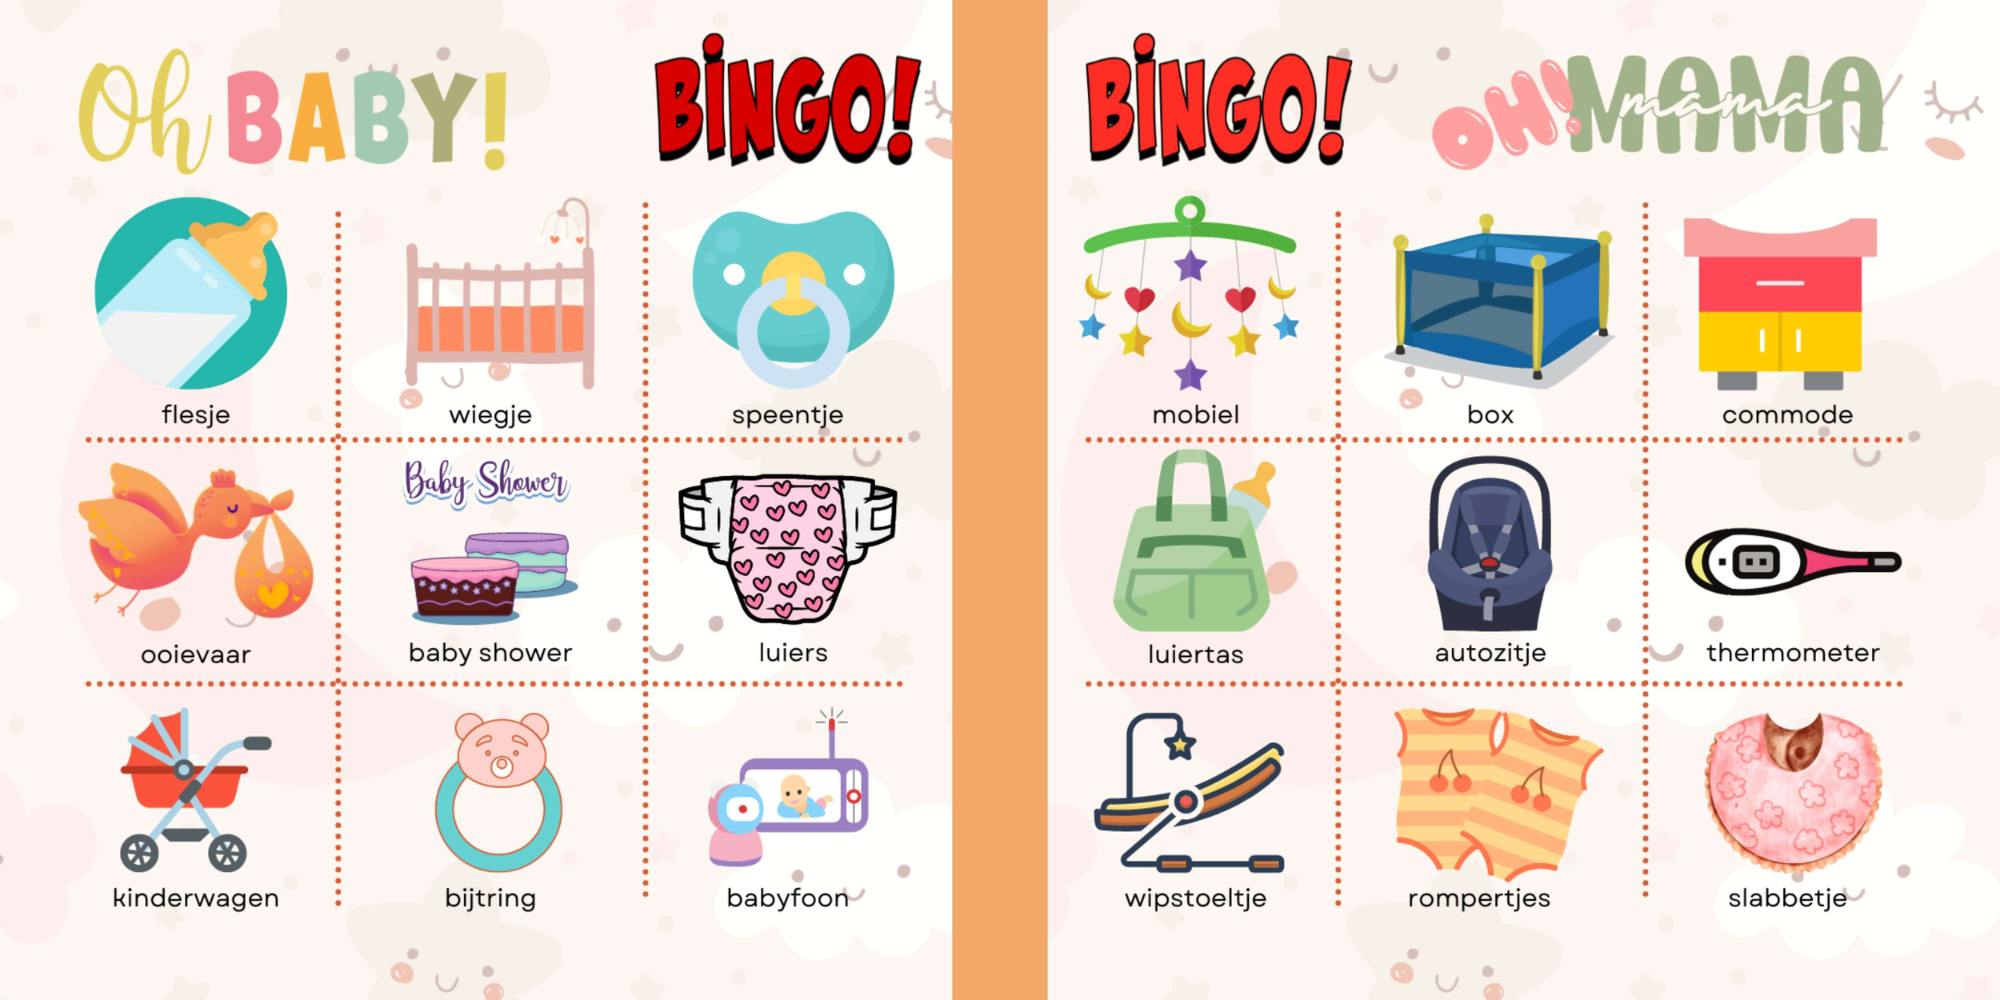 baby shower bingo voor in je vriendenboek of vriendenboekje